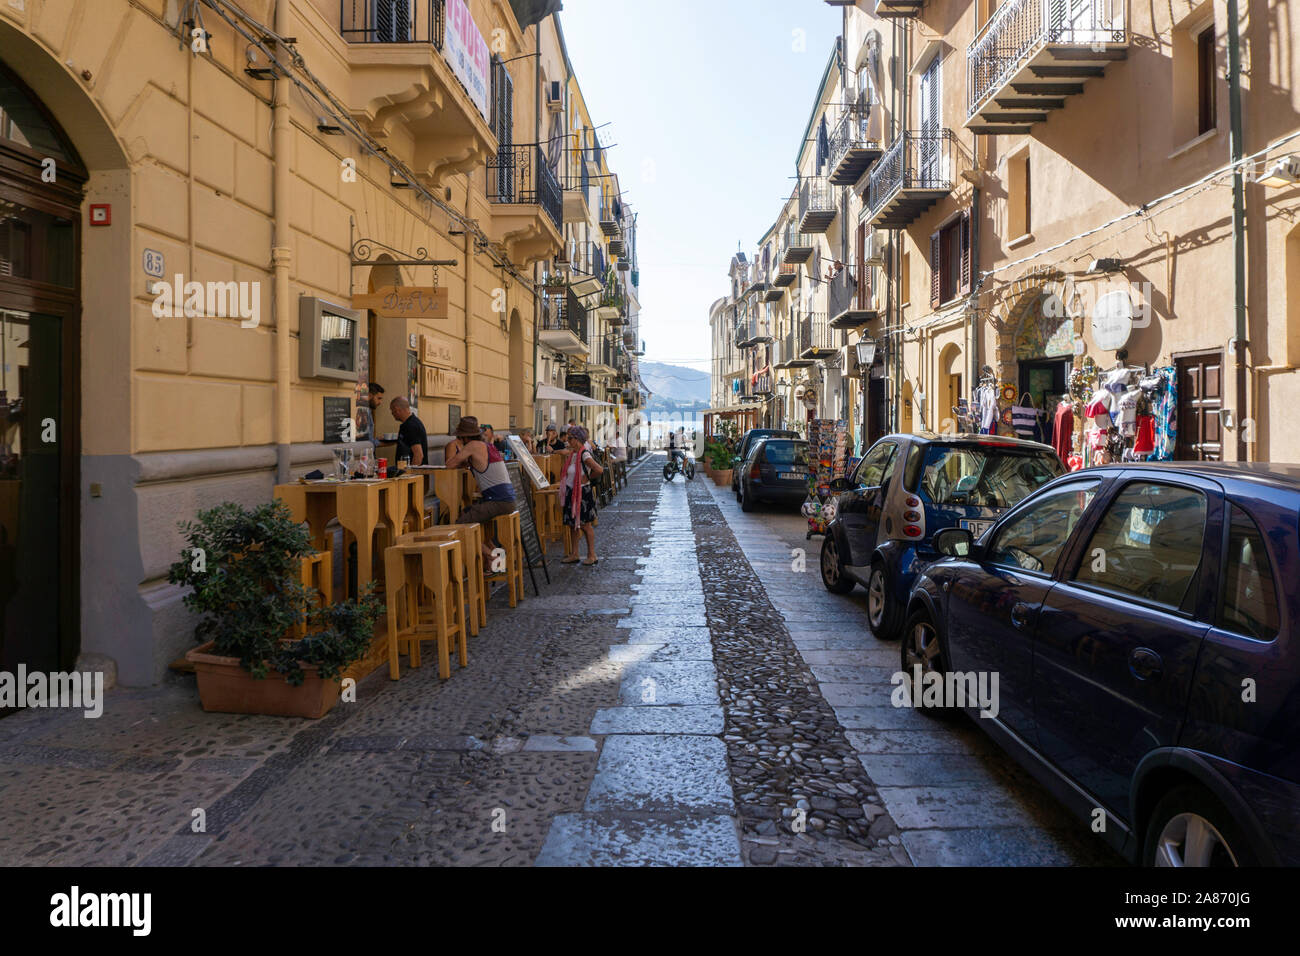 El comedor al aire libre en Cefalú, Sicilia, Italia, La ciudad tiene muchas calles llenas de bares y restaurantes. Foto de stock